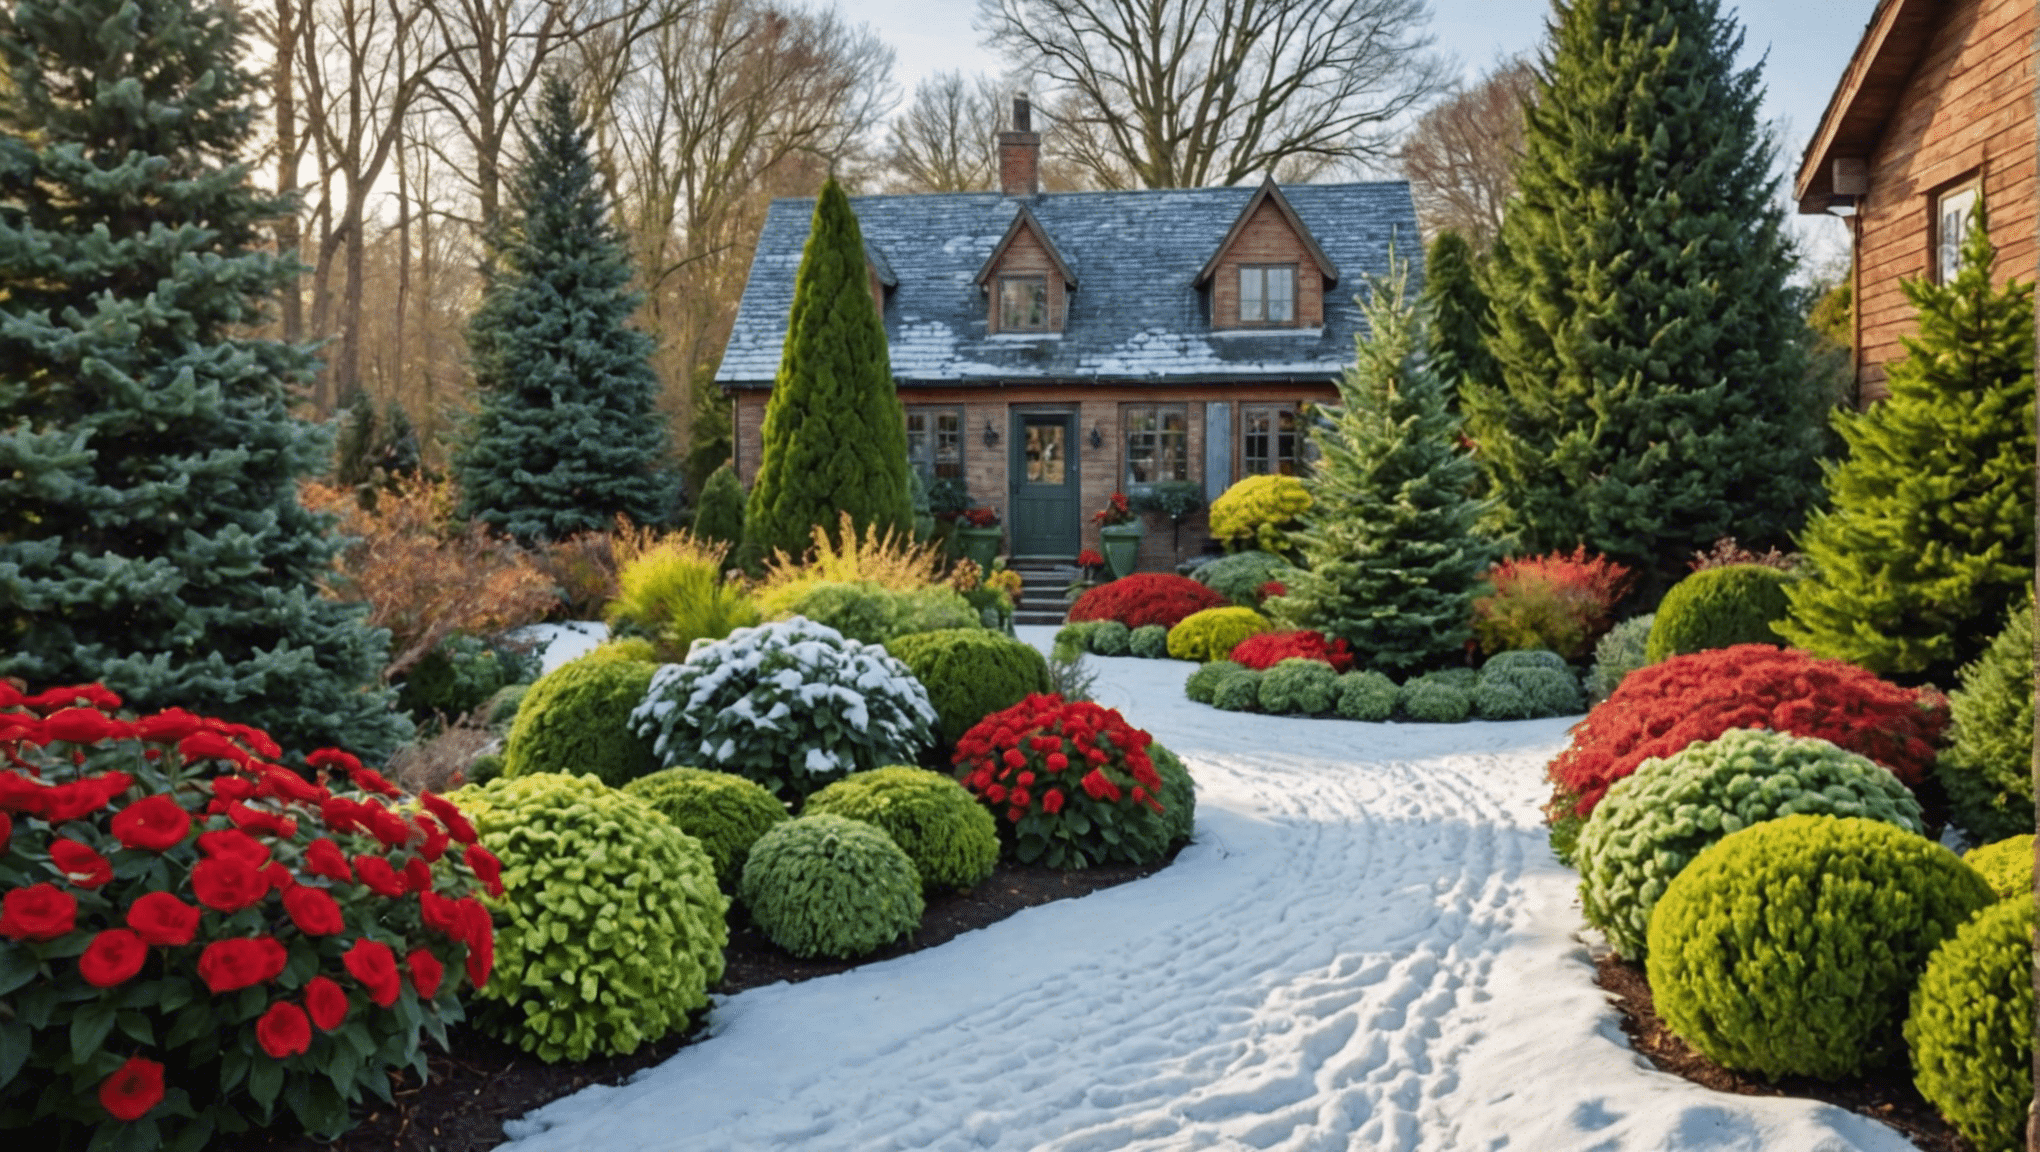 explore as últimas ideias de jardinagem de inverno para aproveitar ao máximo a temporada. descubra dicas, inspiração e conselhos de especialistas para o seu jardim de inverno.